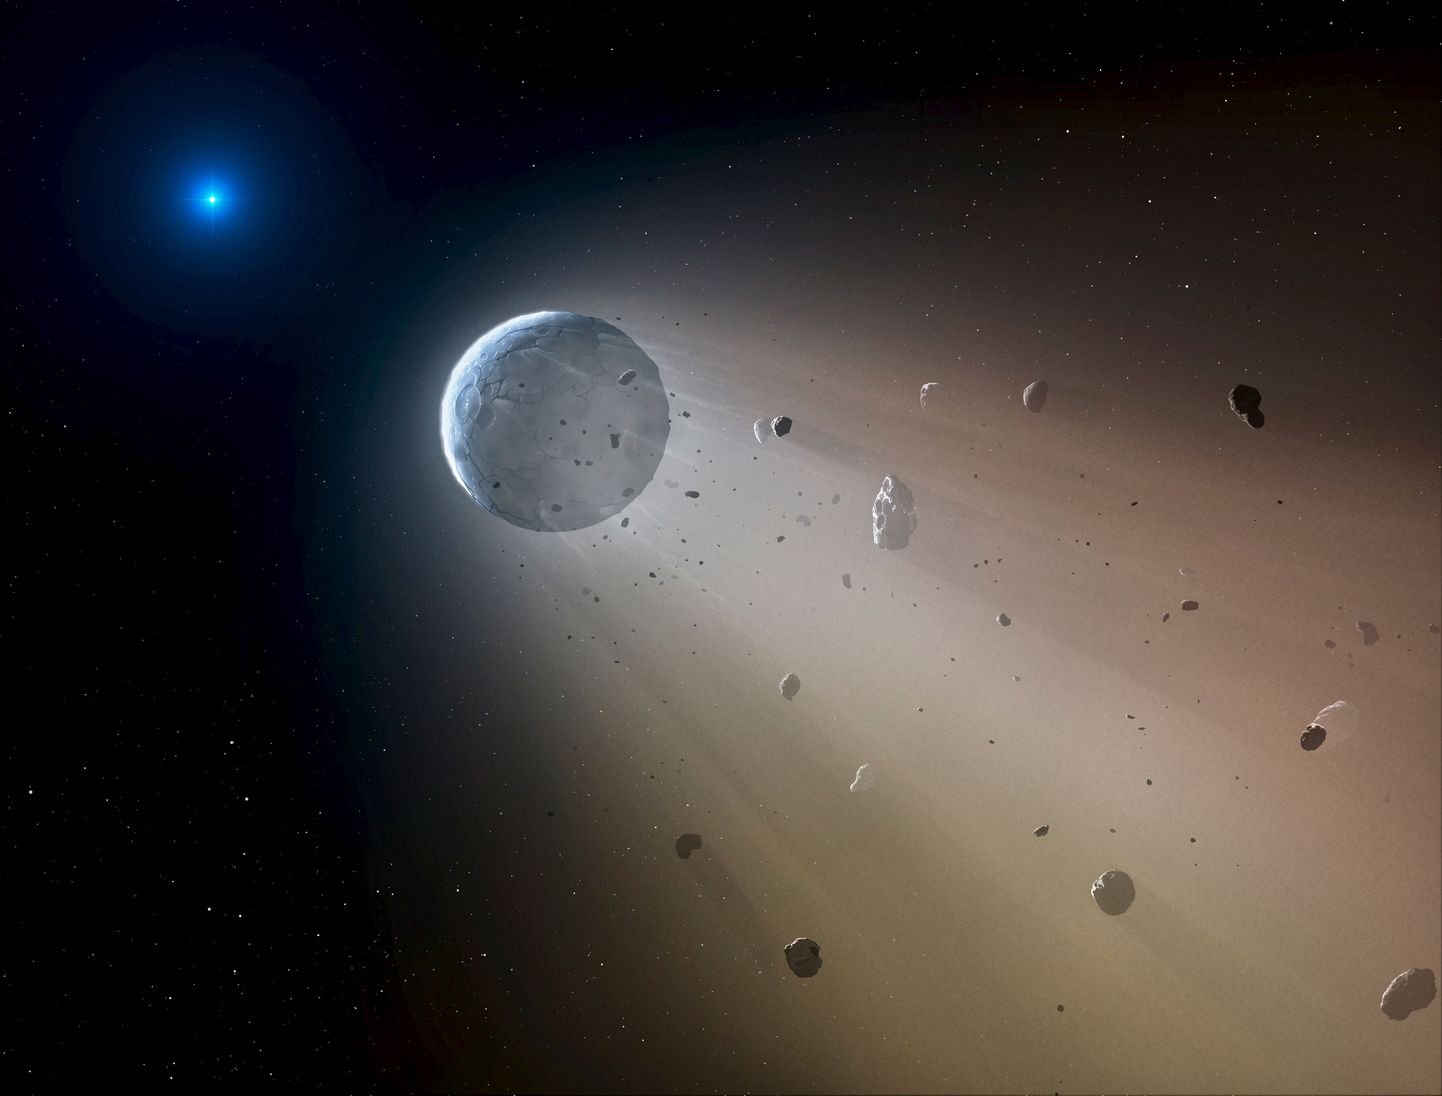 NASA kunstniku kujutis kääbusplaneet Cerese tüüpi asteroidi lagunemisest. Värskes uuringus näitavad teadlased, et asteroidid pidid oma varases nooruses olema hoopis hiiglaslikud mudakehad.